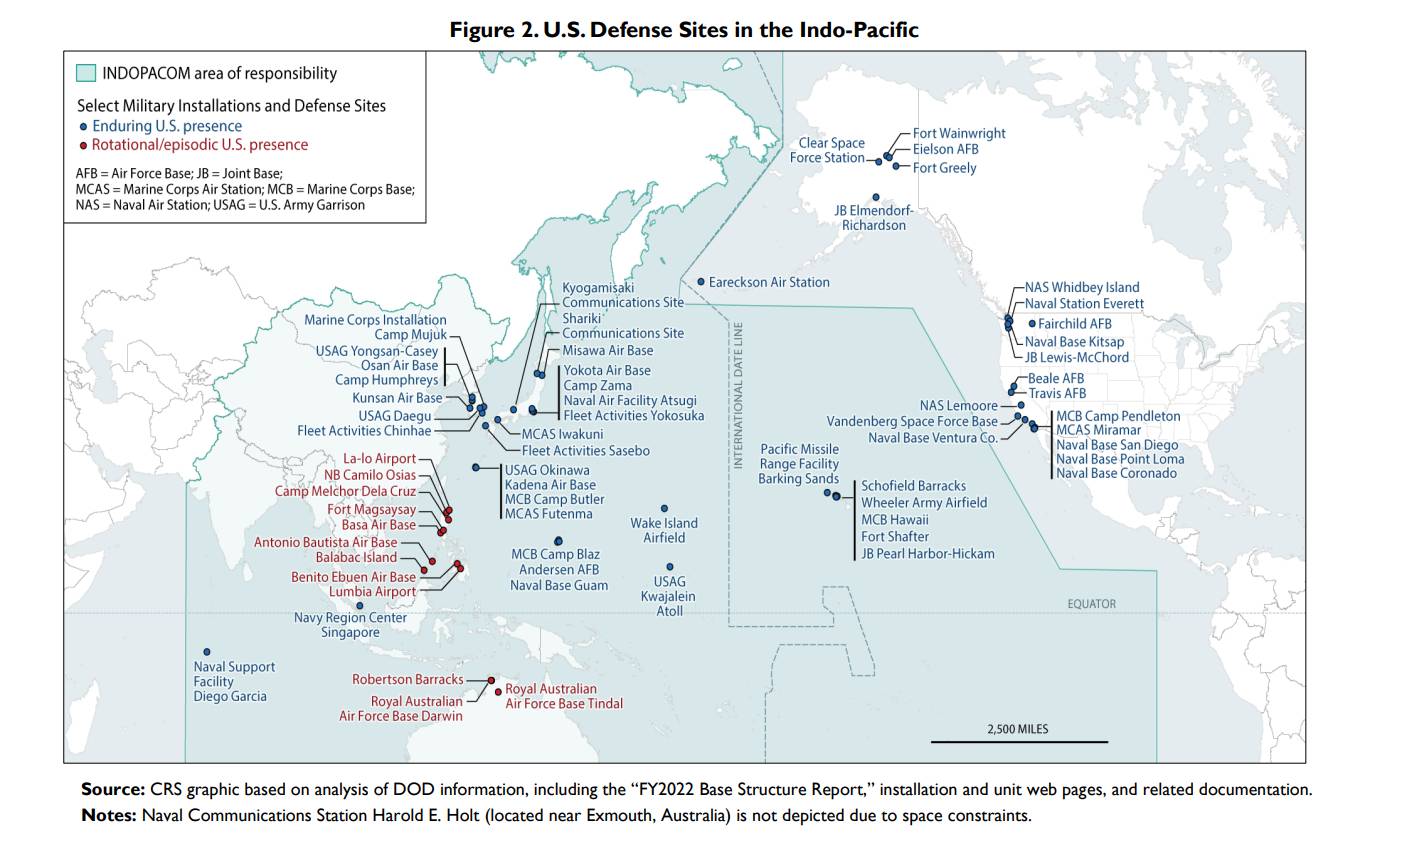 Цитата: Оборонные объекты США в Индо-Тихоокеанском регионе